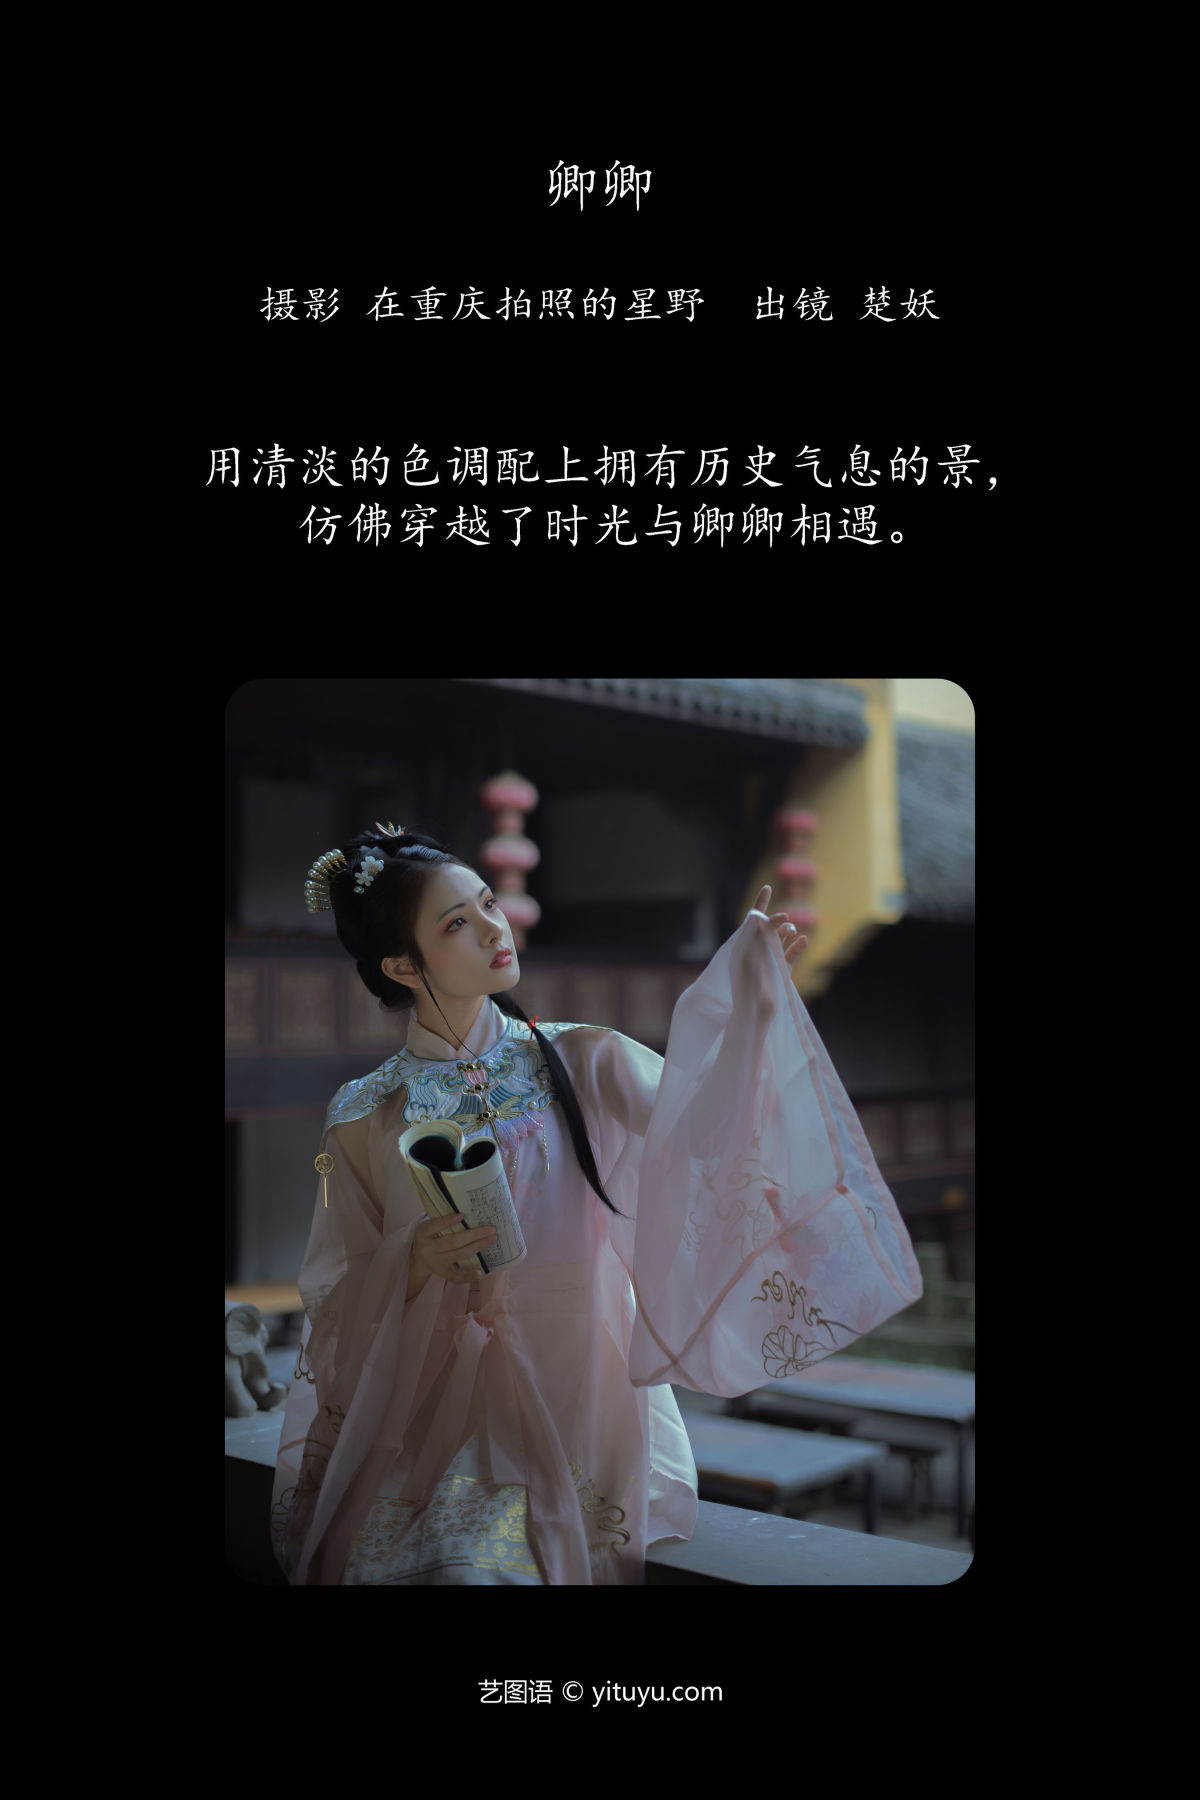 在重庆拍照的星野_楚妖《卿卿》美图作品图片2